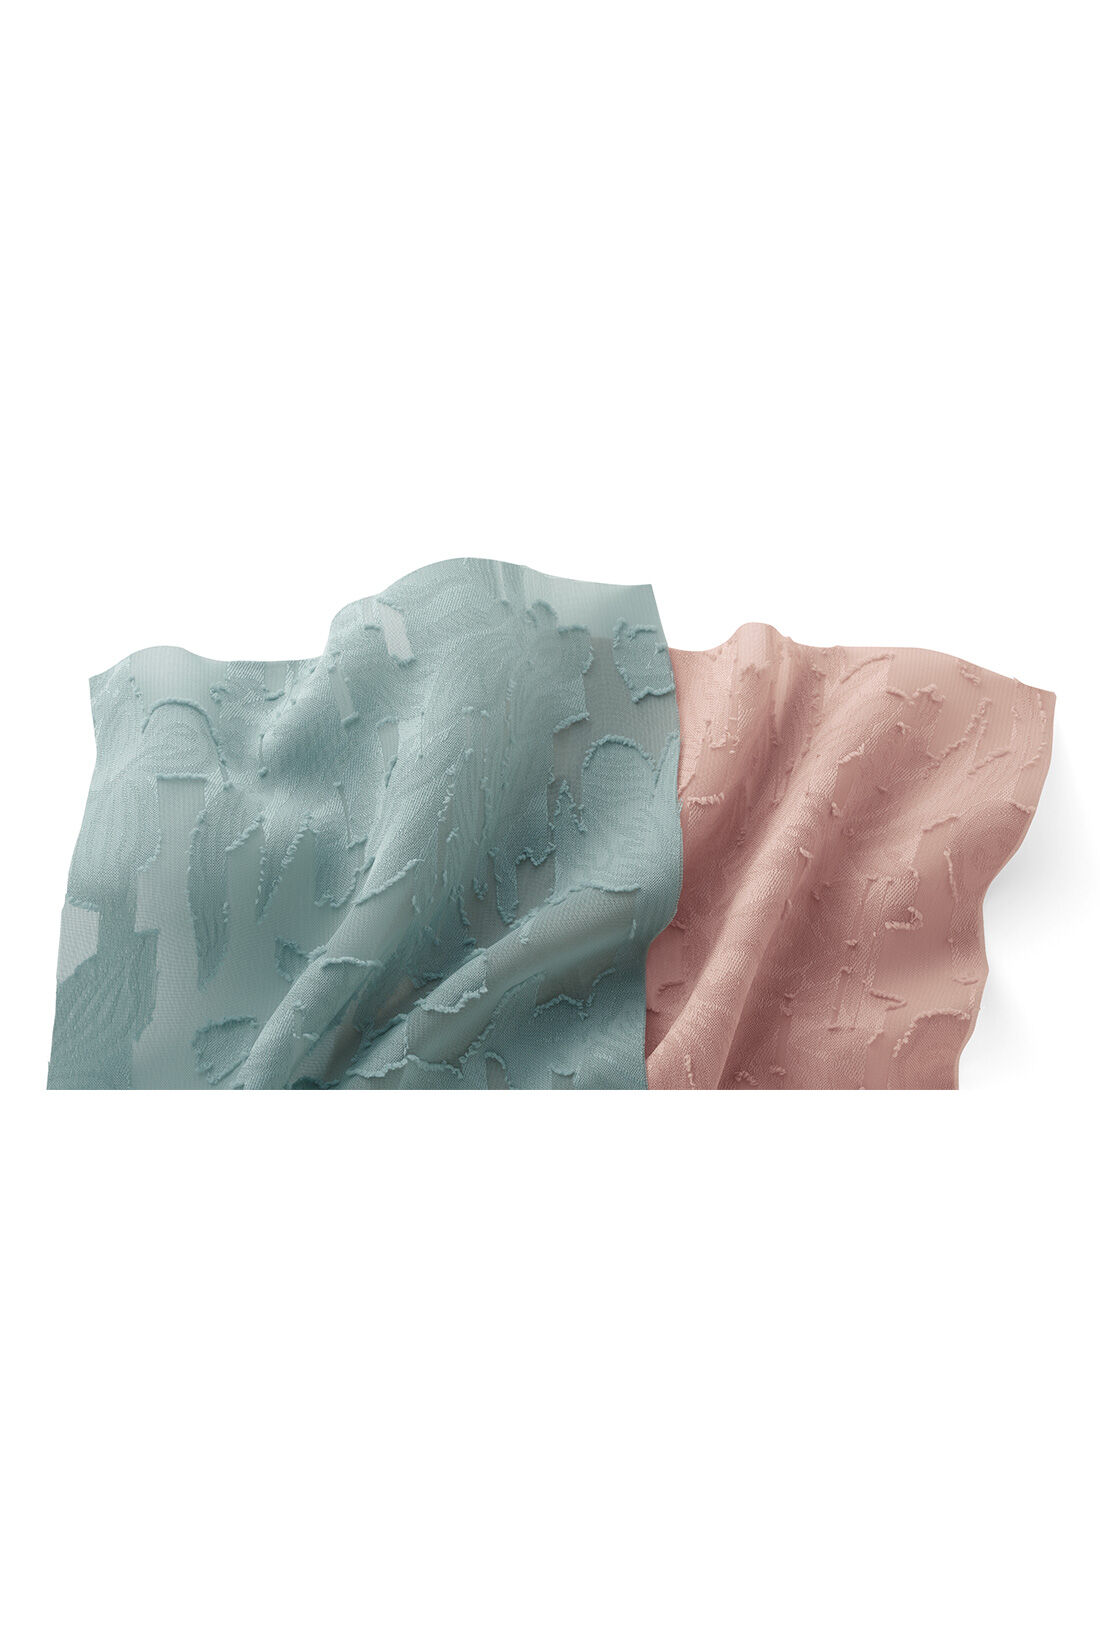 MEDE19F|MEDE19F　シアーカットジャカードのガウンワンピース〈ピンク〉|ボタニカルなモチーフが立体的に浮かぶ、カットジャカードをセレクト。セミシアーでやわらかな透け感のあるポリエステル素材です。